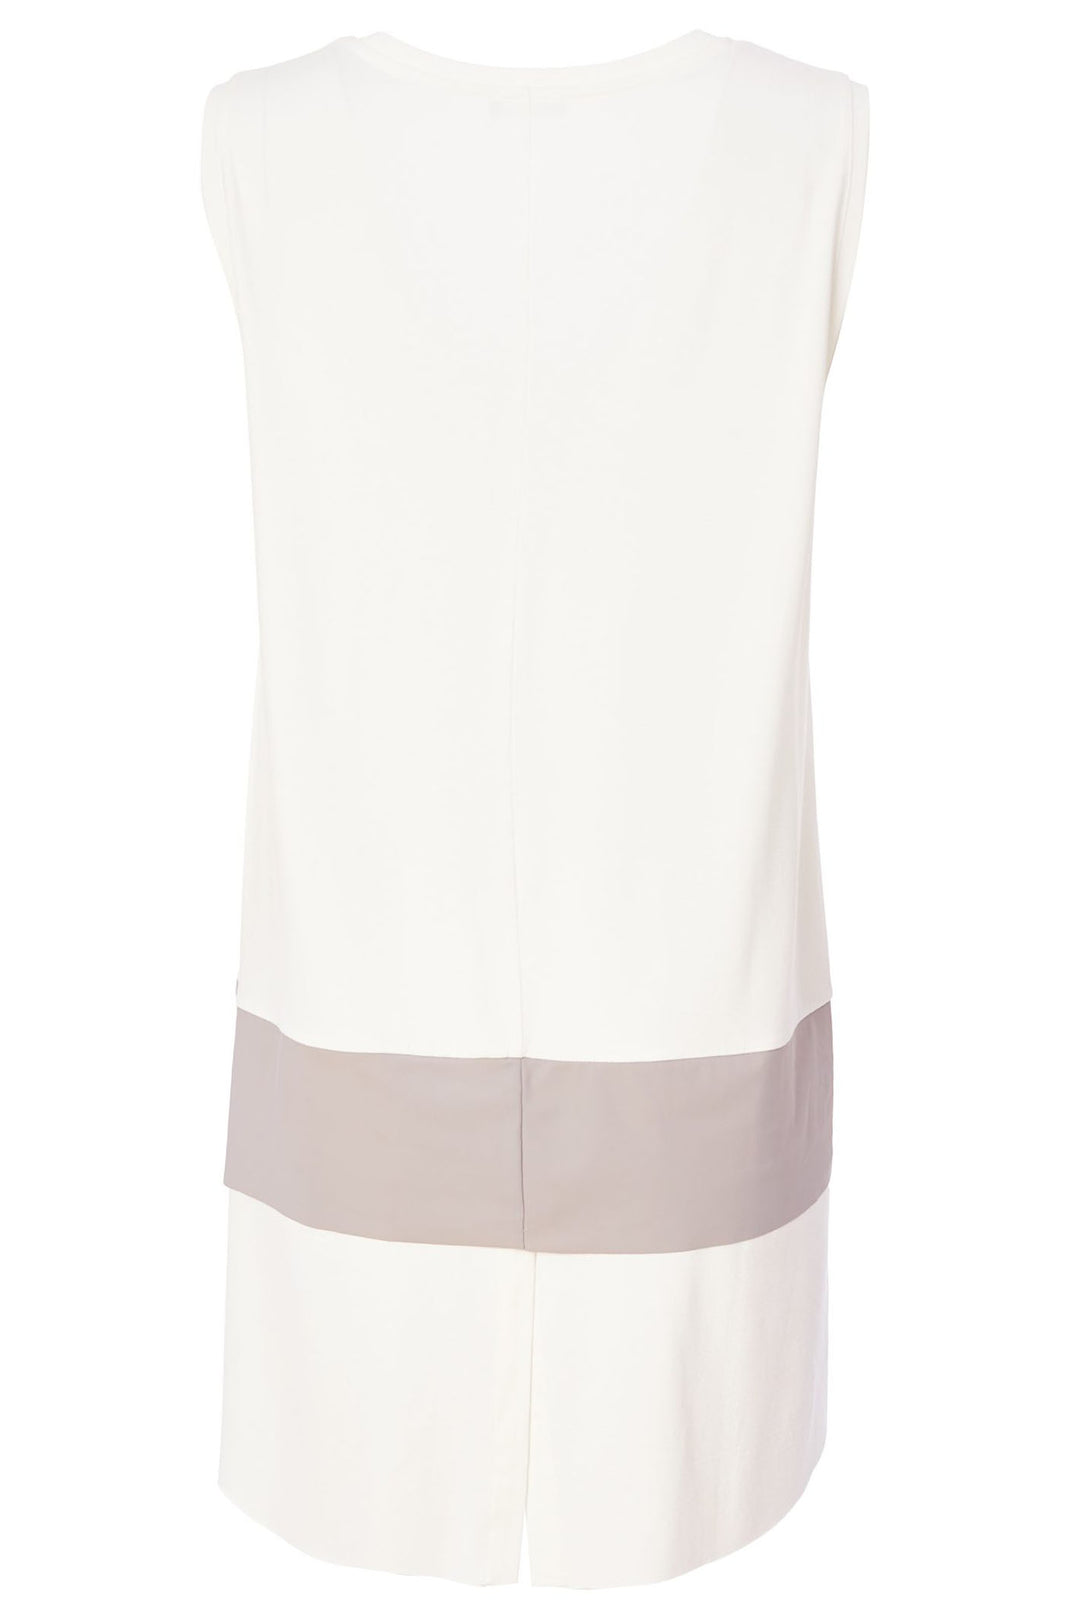 Naya NAS24154 Cream Mink Long Line Camisole - Olivia Grace Fashion